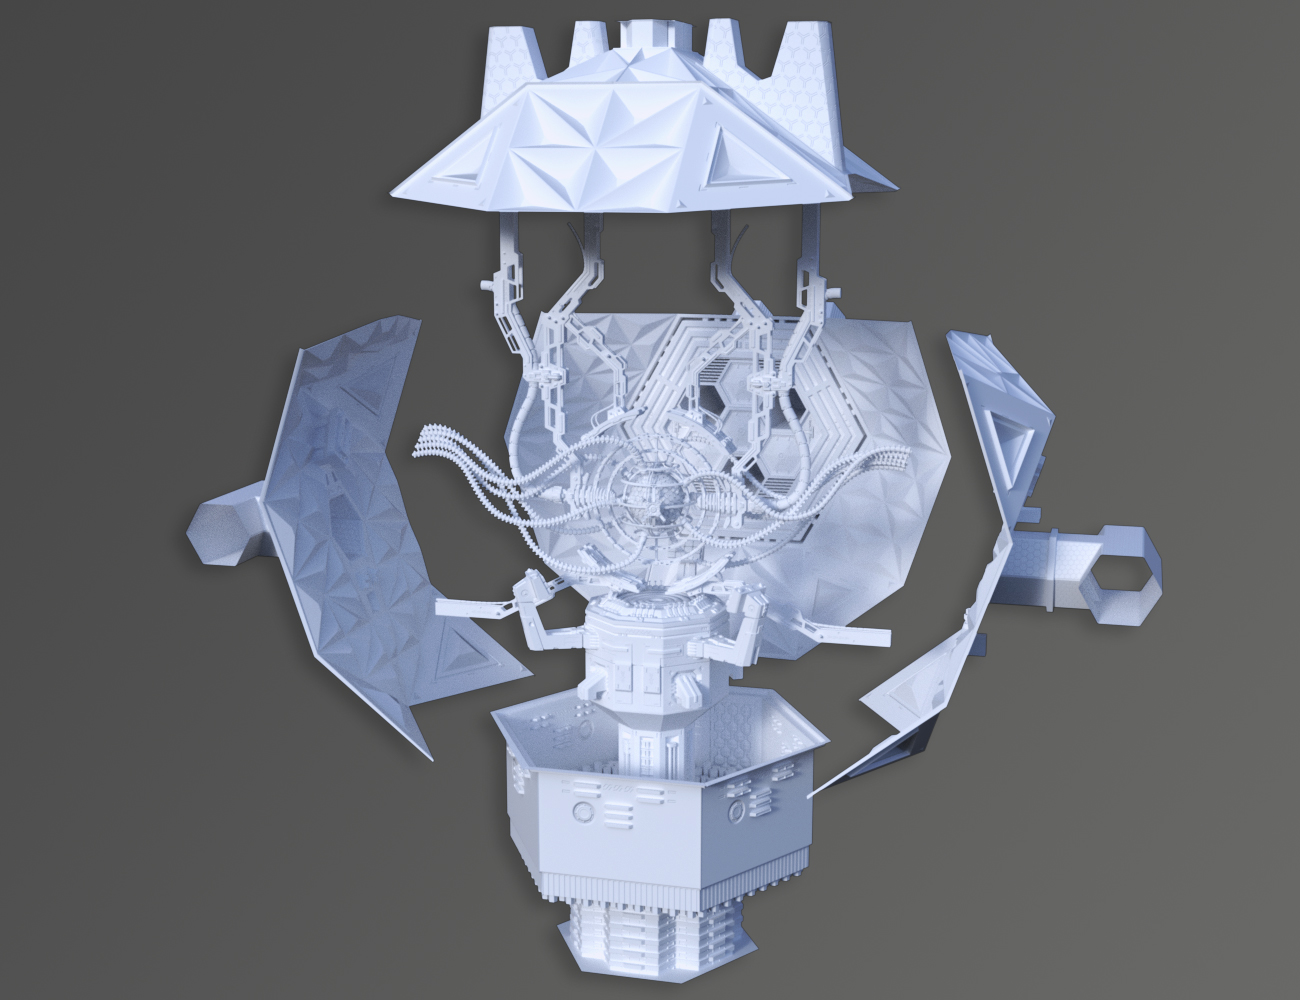 Dominator Archon by: petipet, 3D Models by Daz 3D